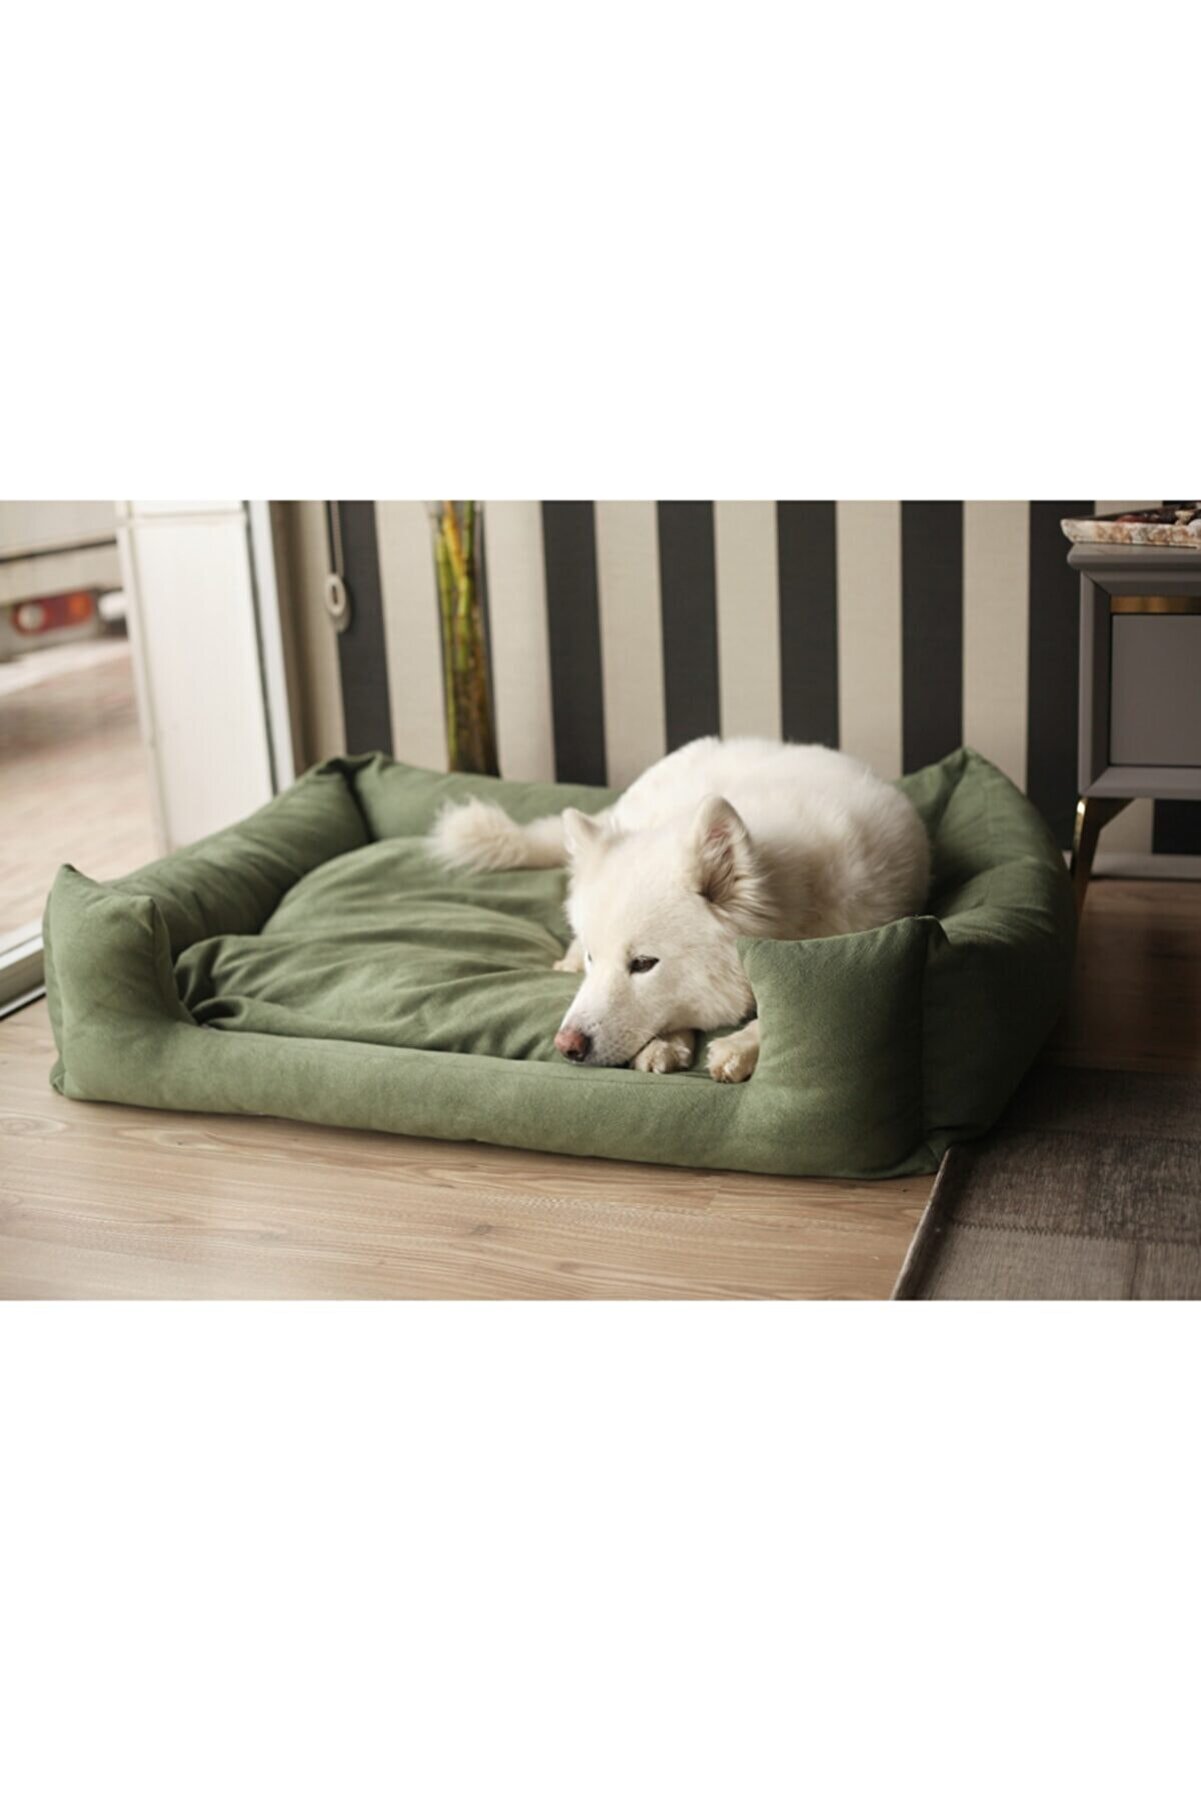 LUVLY PETS Ortopedik Köpek Yatağı X-large Yıkanabilir Kemik Yastıklı Tüplü Tay Tüyü Yeşil 100x80 cm